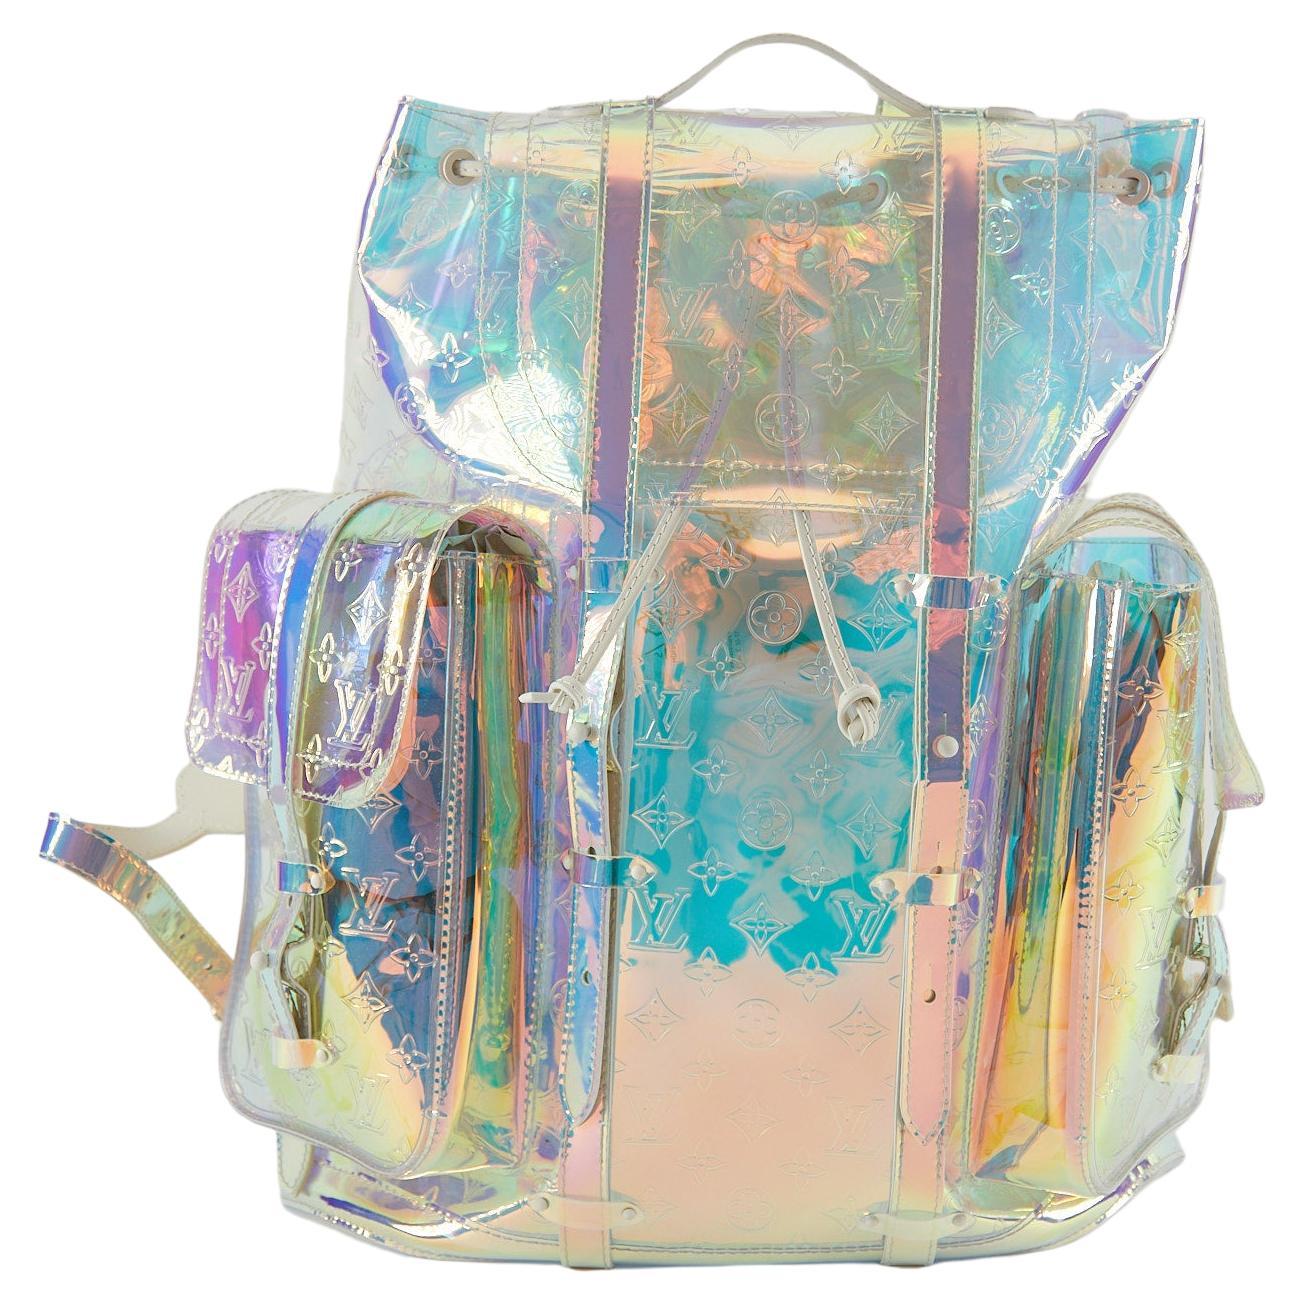 Prism Backpack - 5 For Sale on 1stDibs